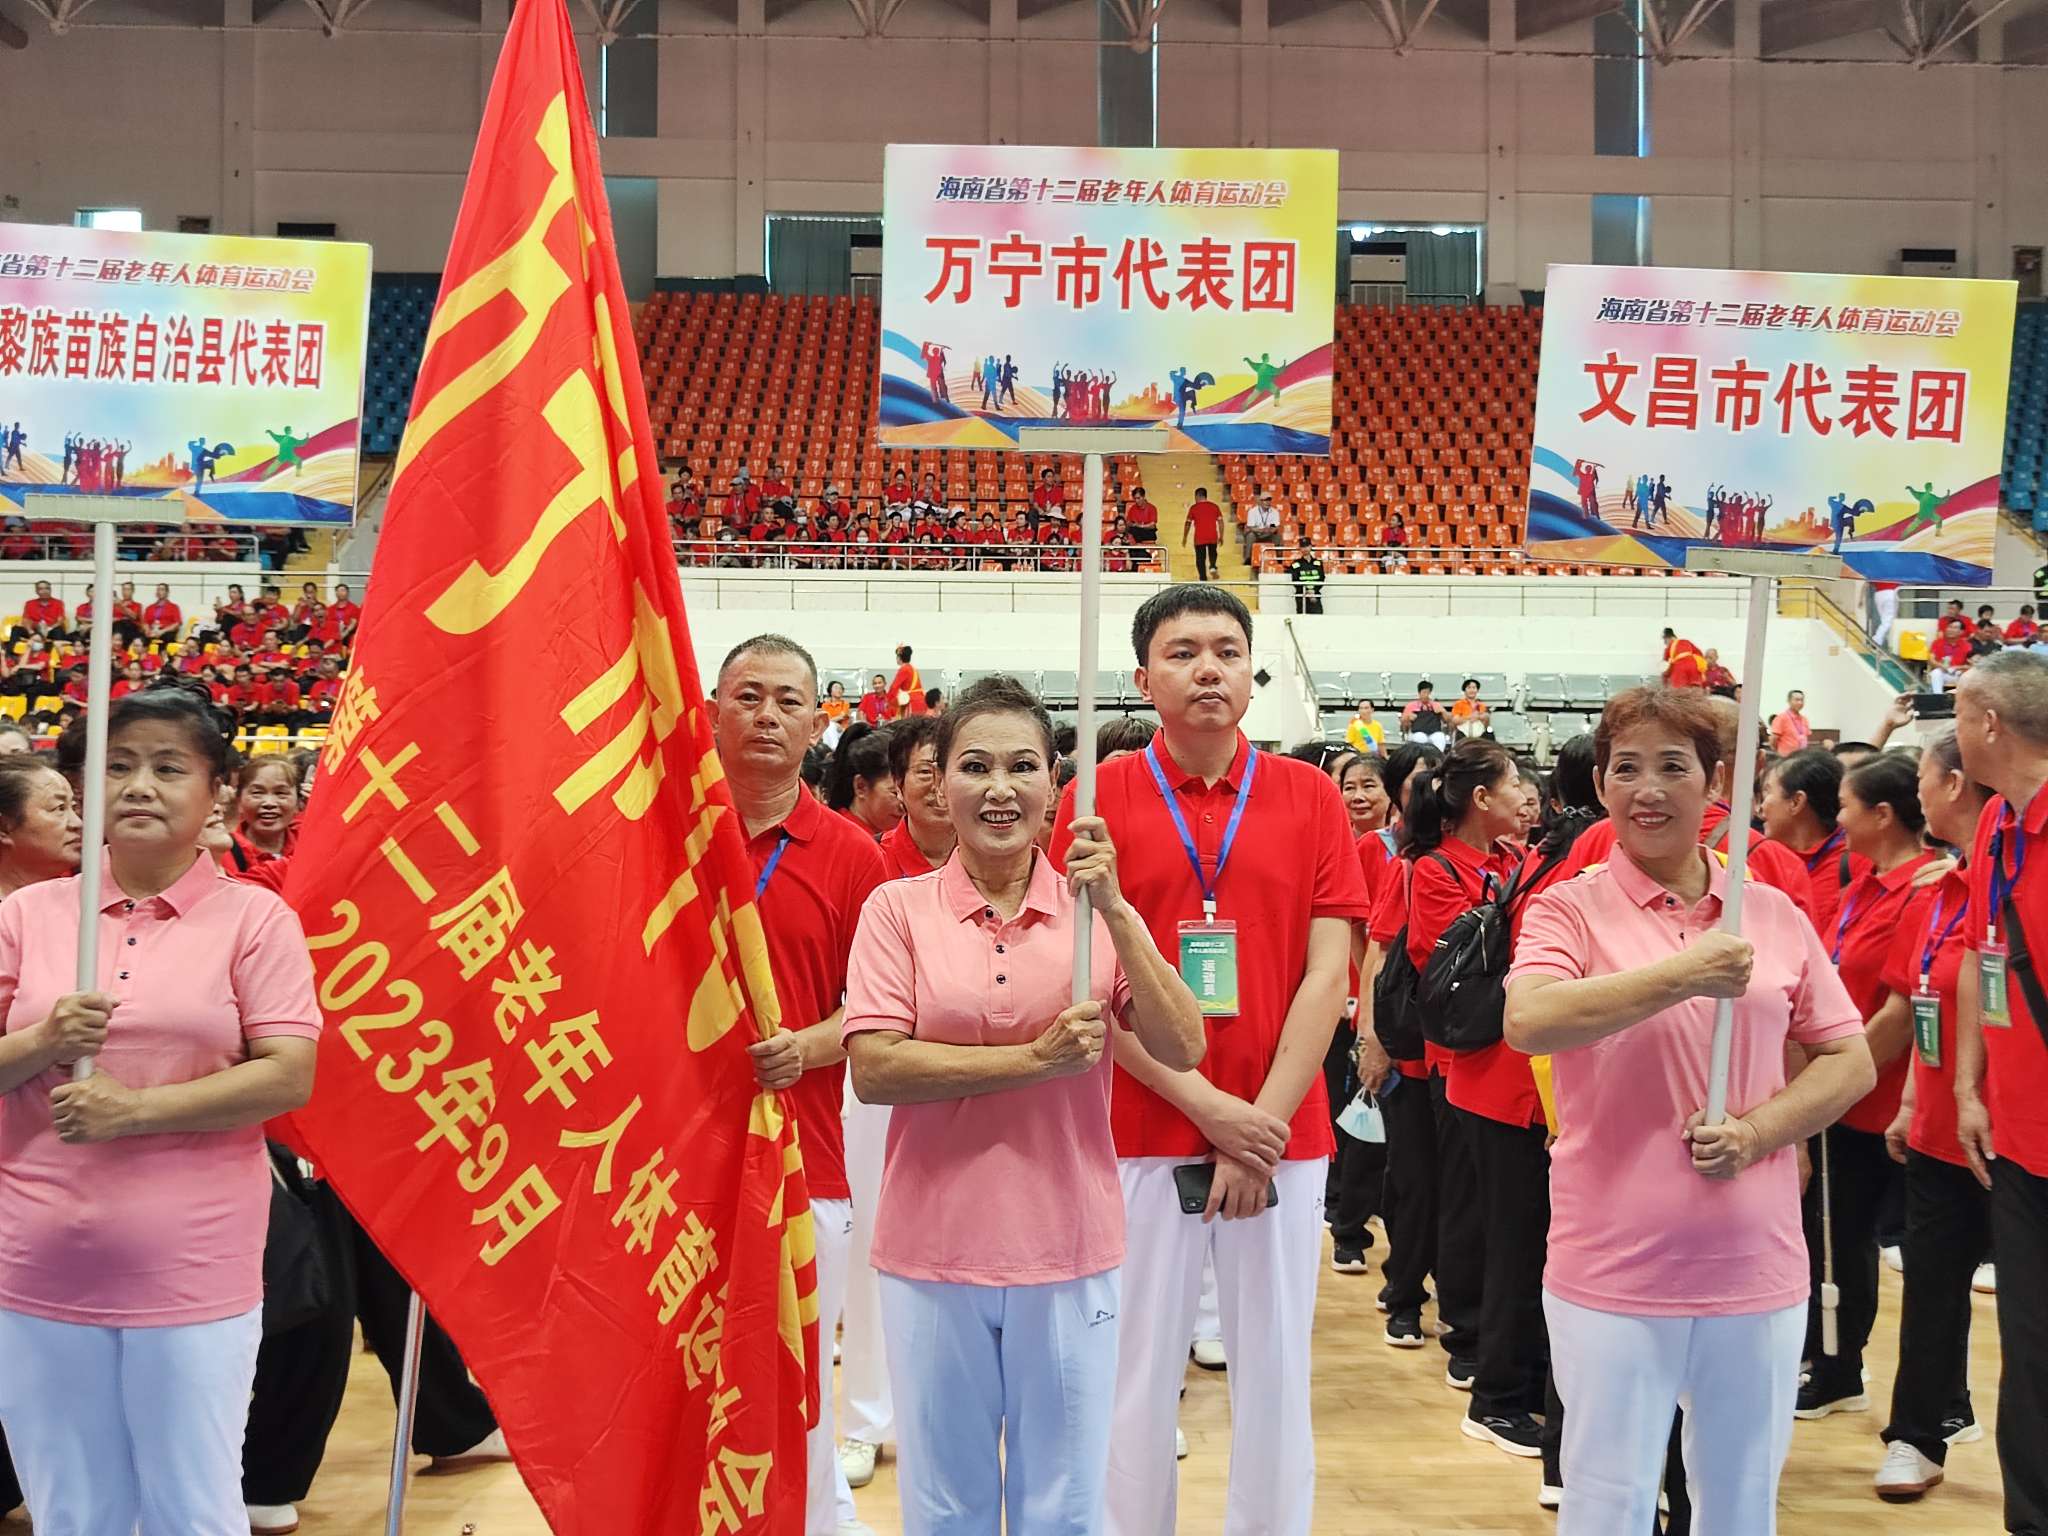 海南省第十二届老年人体育运动会正式开幕 万宁首场比赛斩获优胜